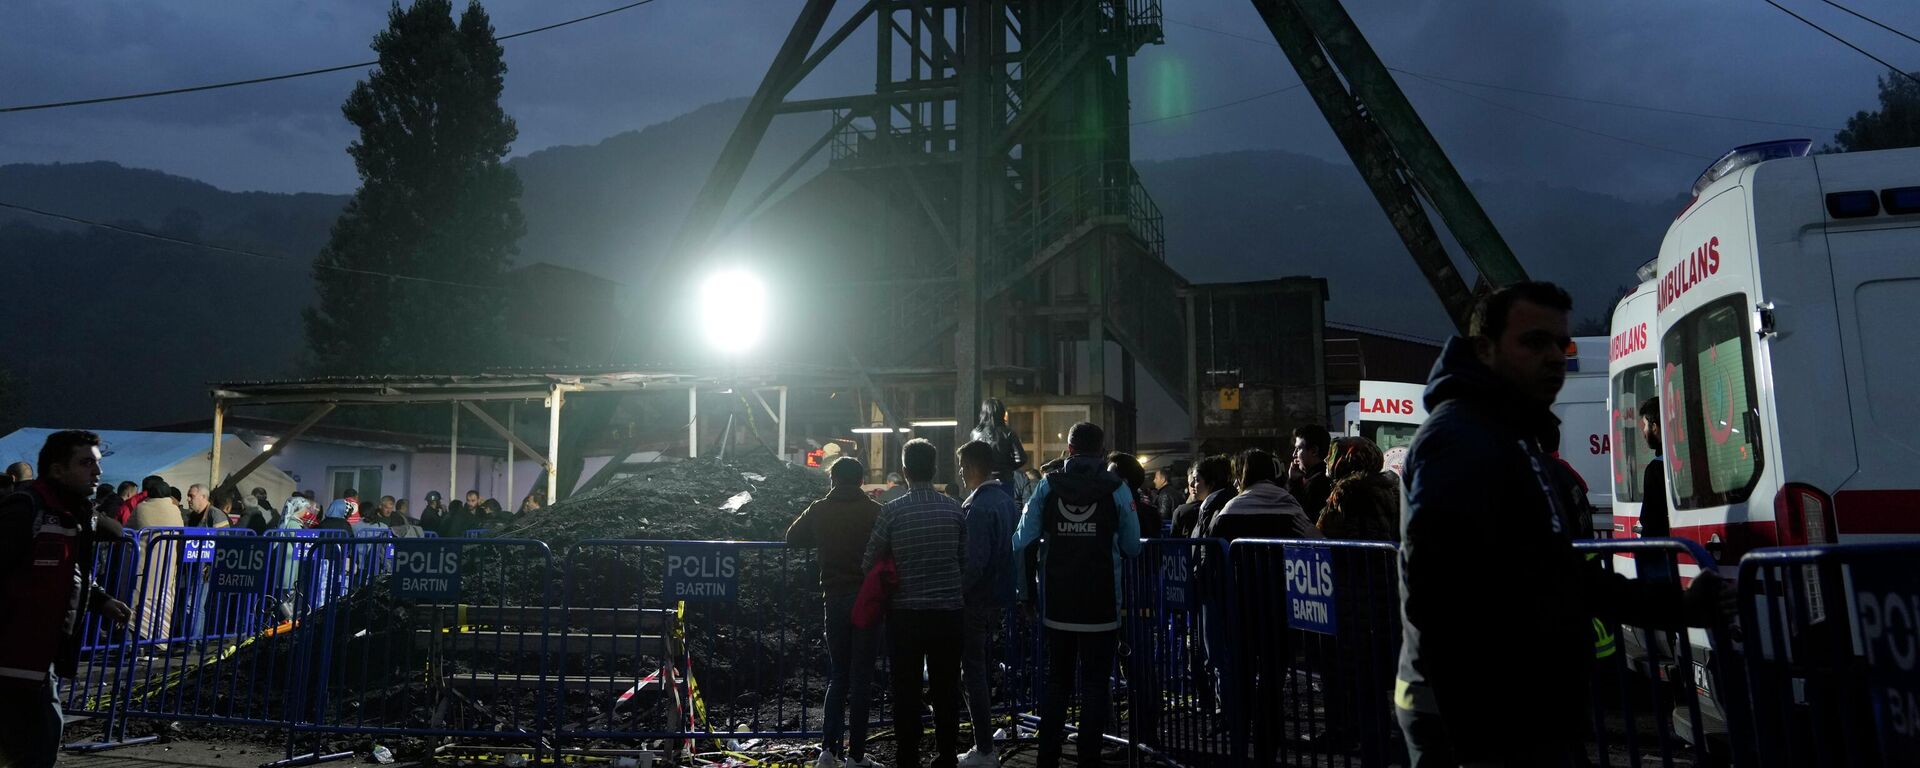 Родственники пропавших без вести шахтеров собираются перед шахтой TTK Amasra Muessese Mudurlugu, где накануне произошел взрыв - Sputnik Абхазия, 1920, 15.10.2022